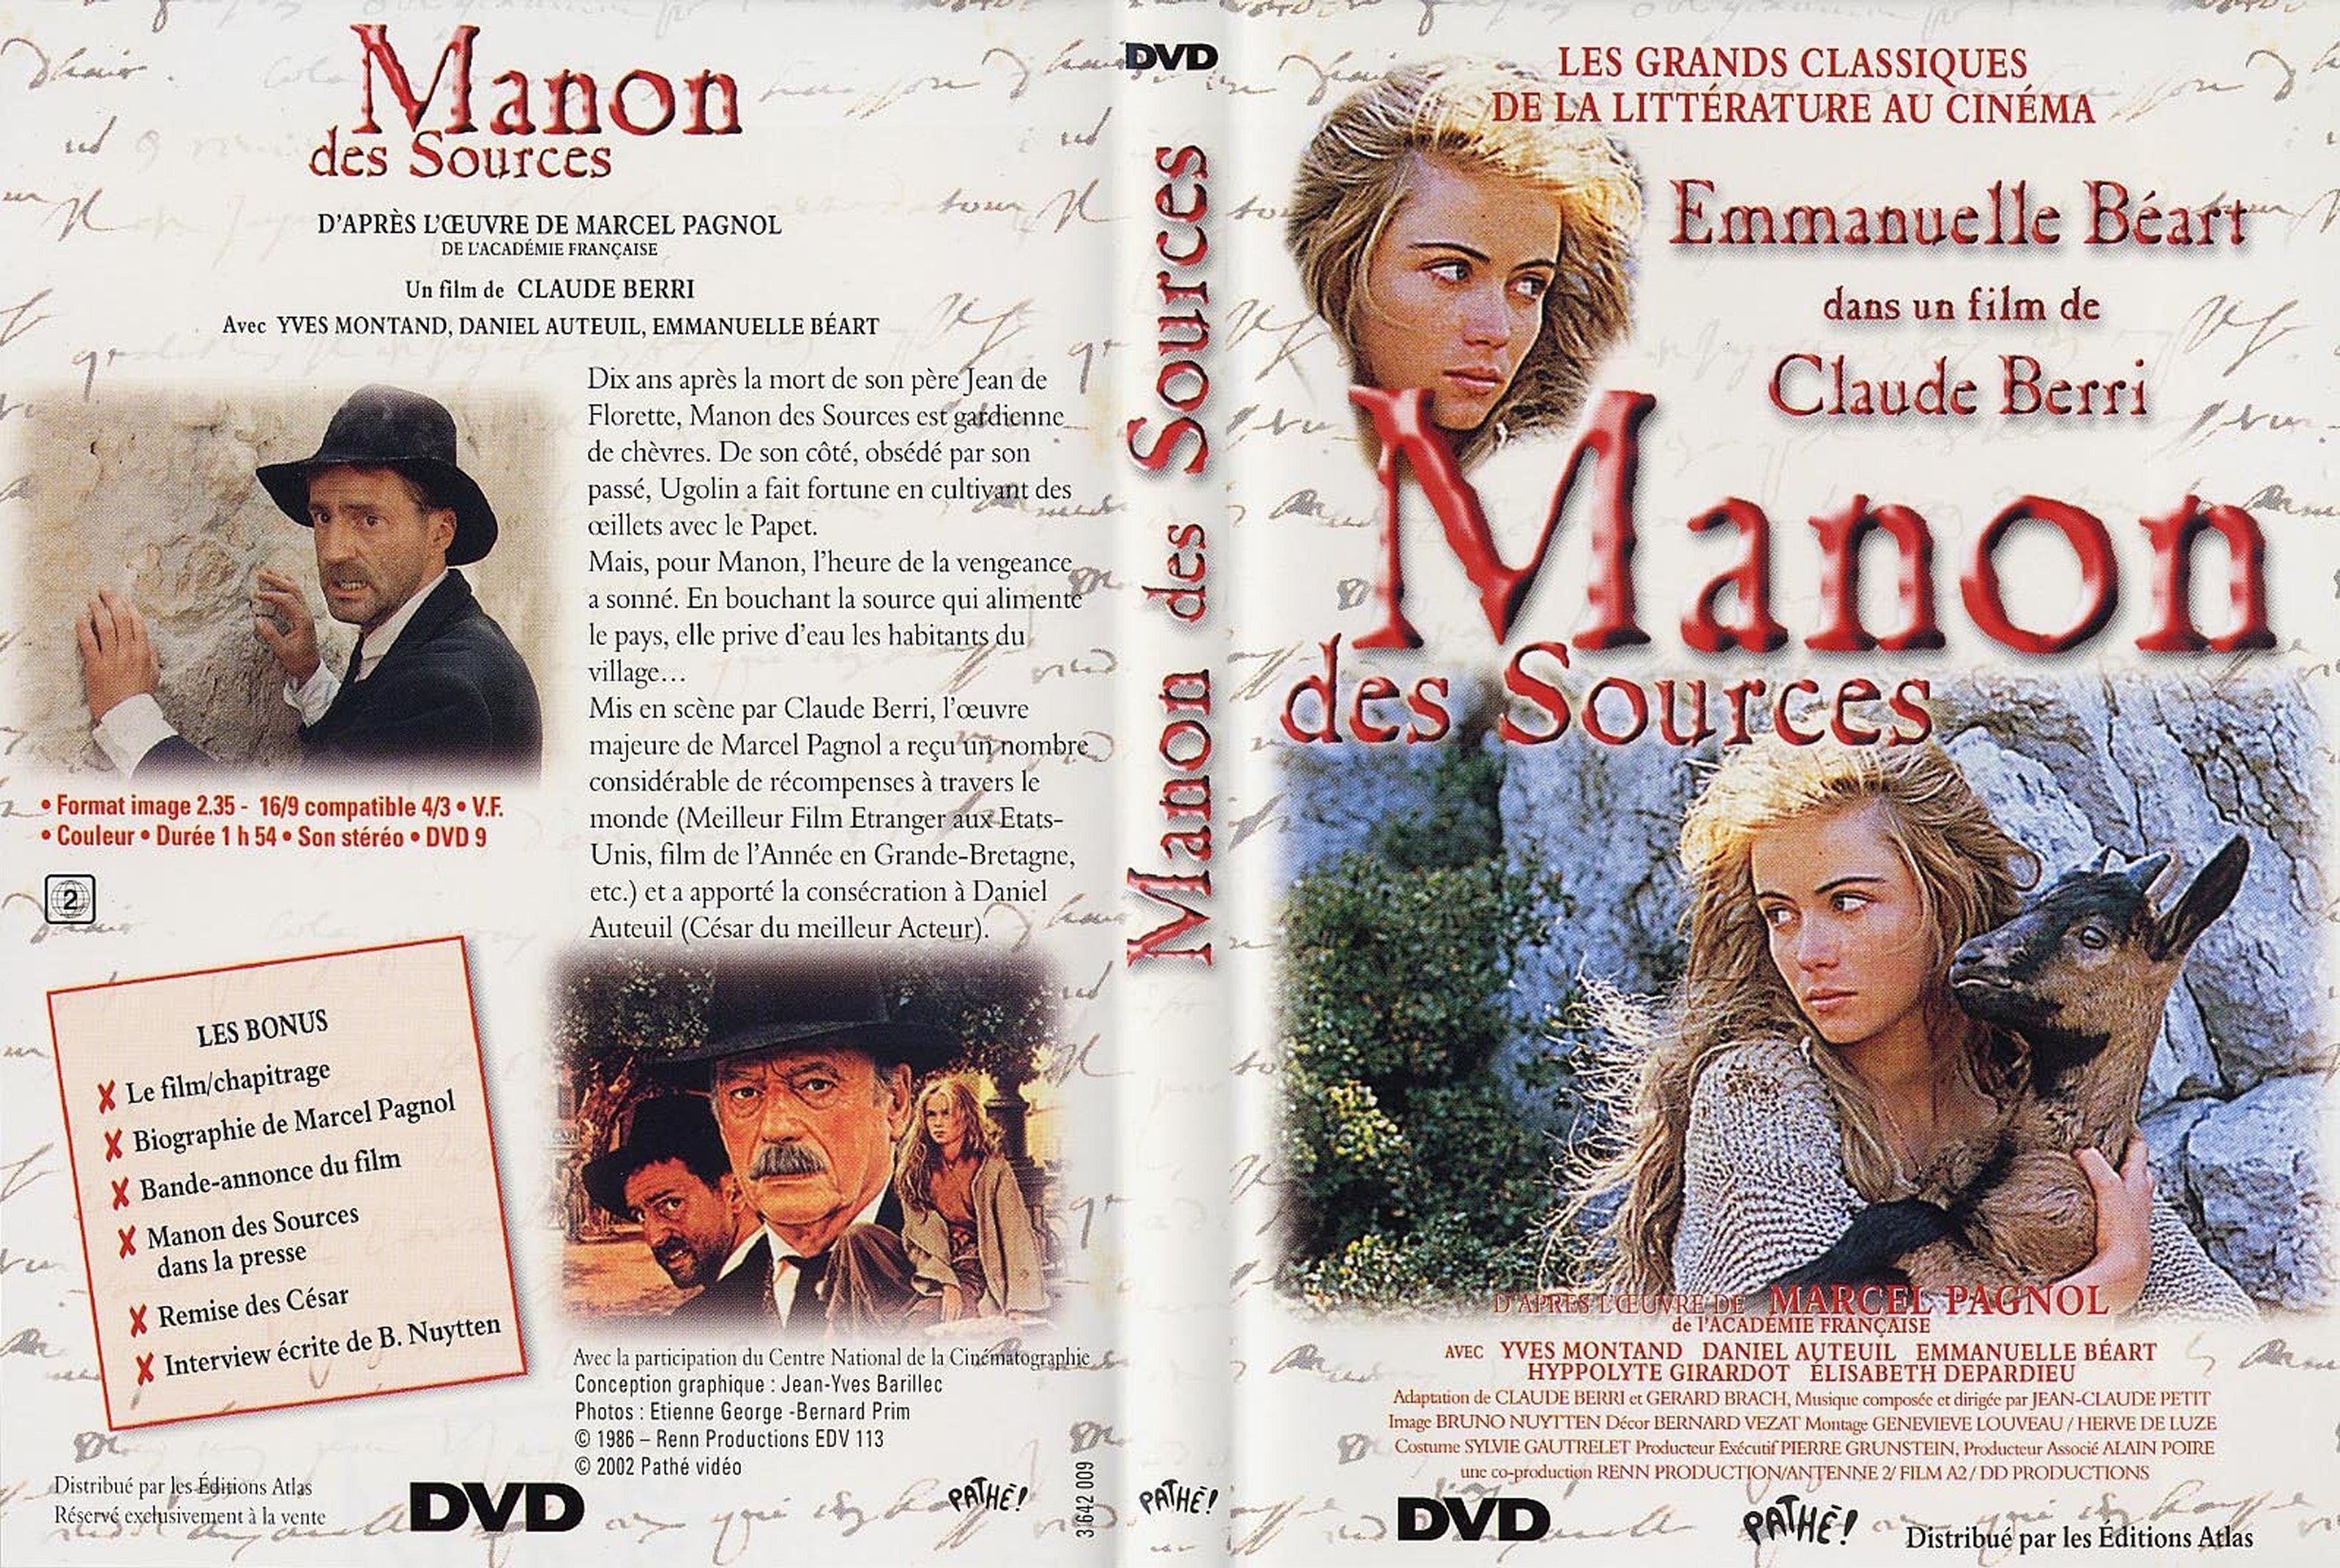 Jaquette DVD Manon des sources v2